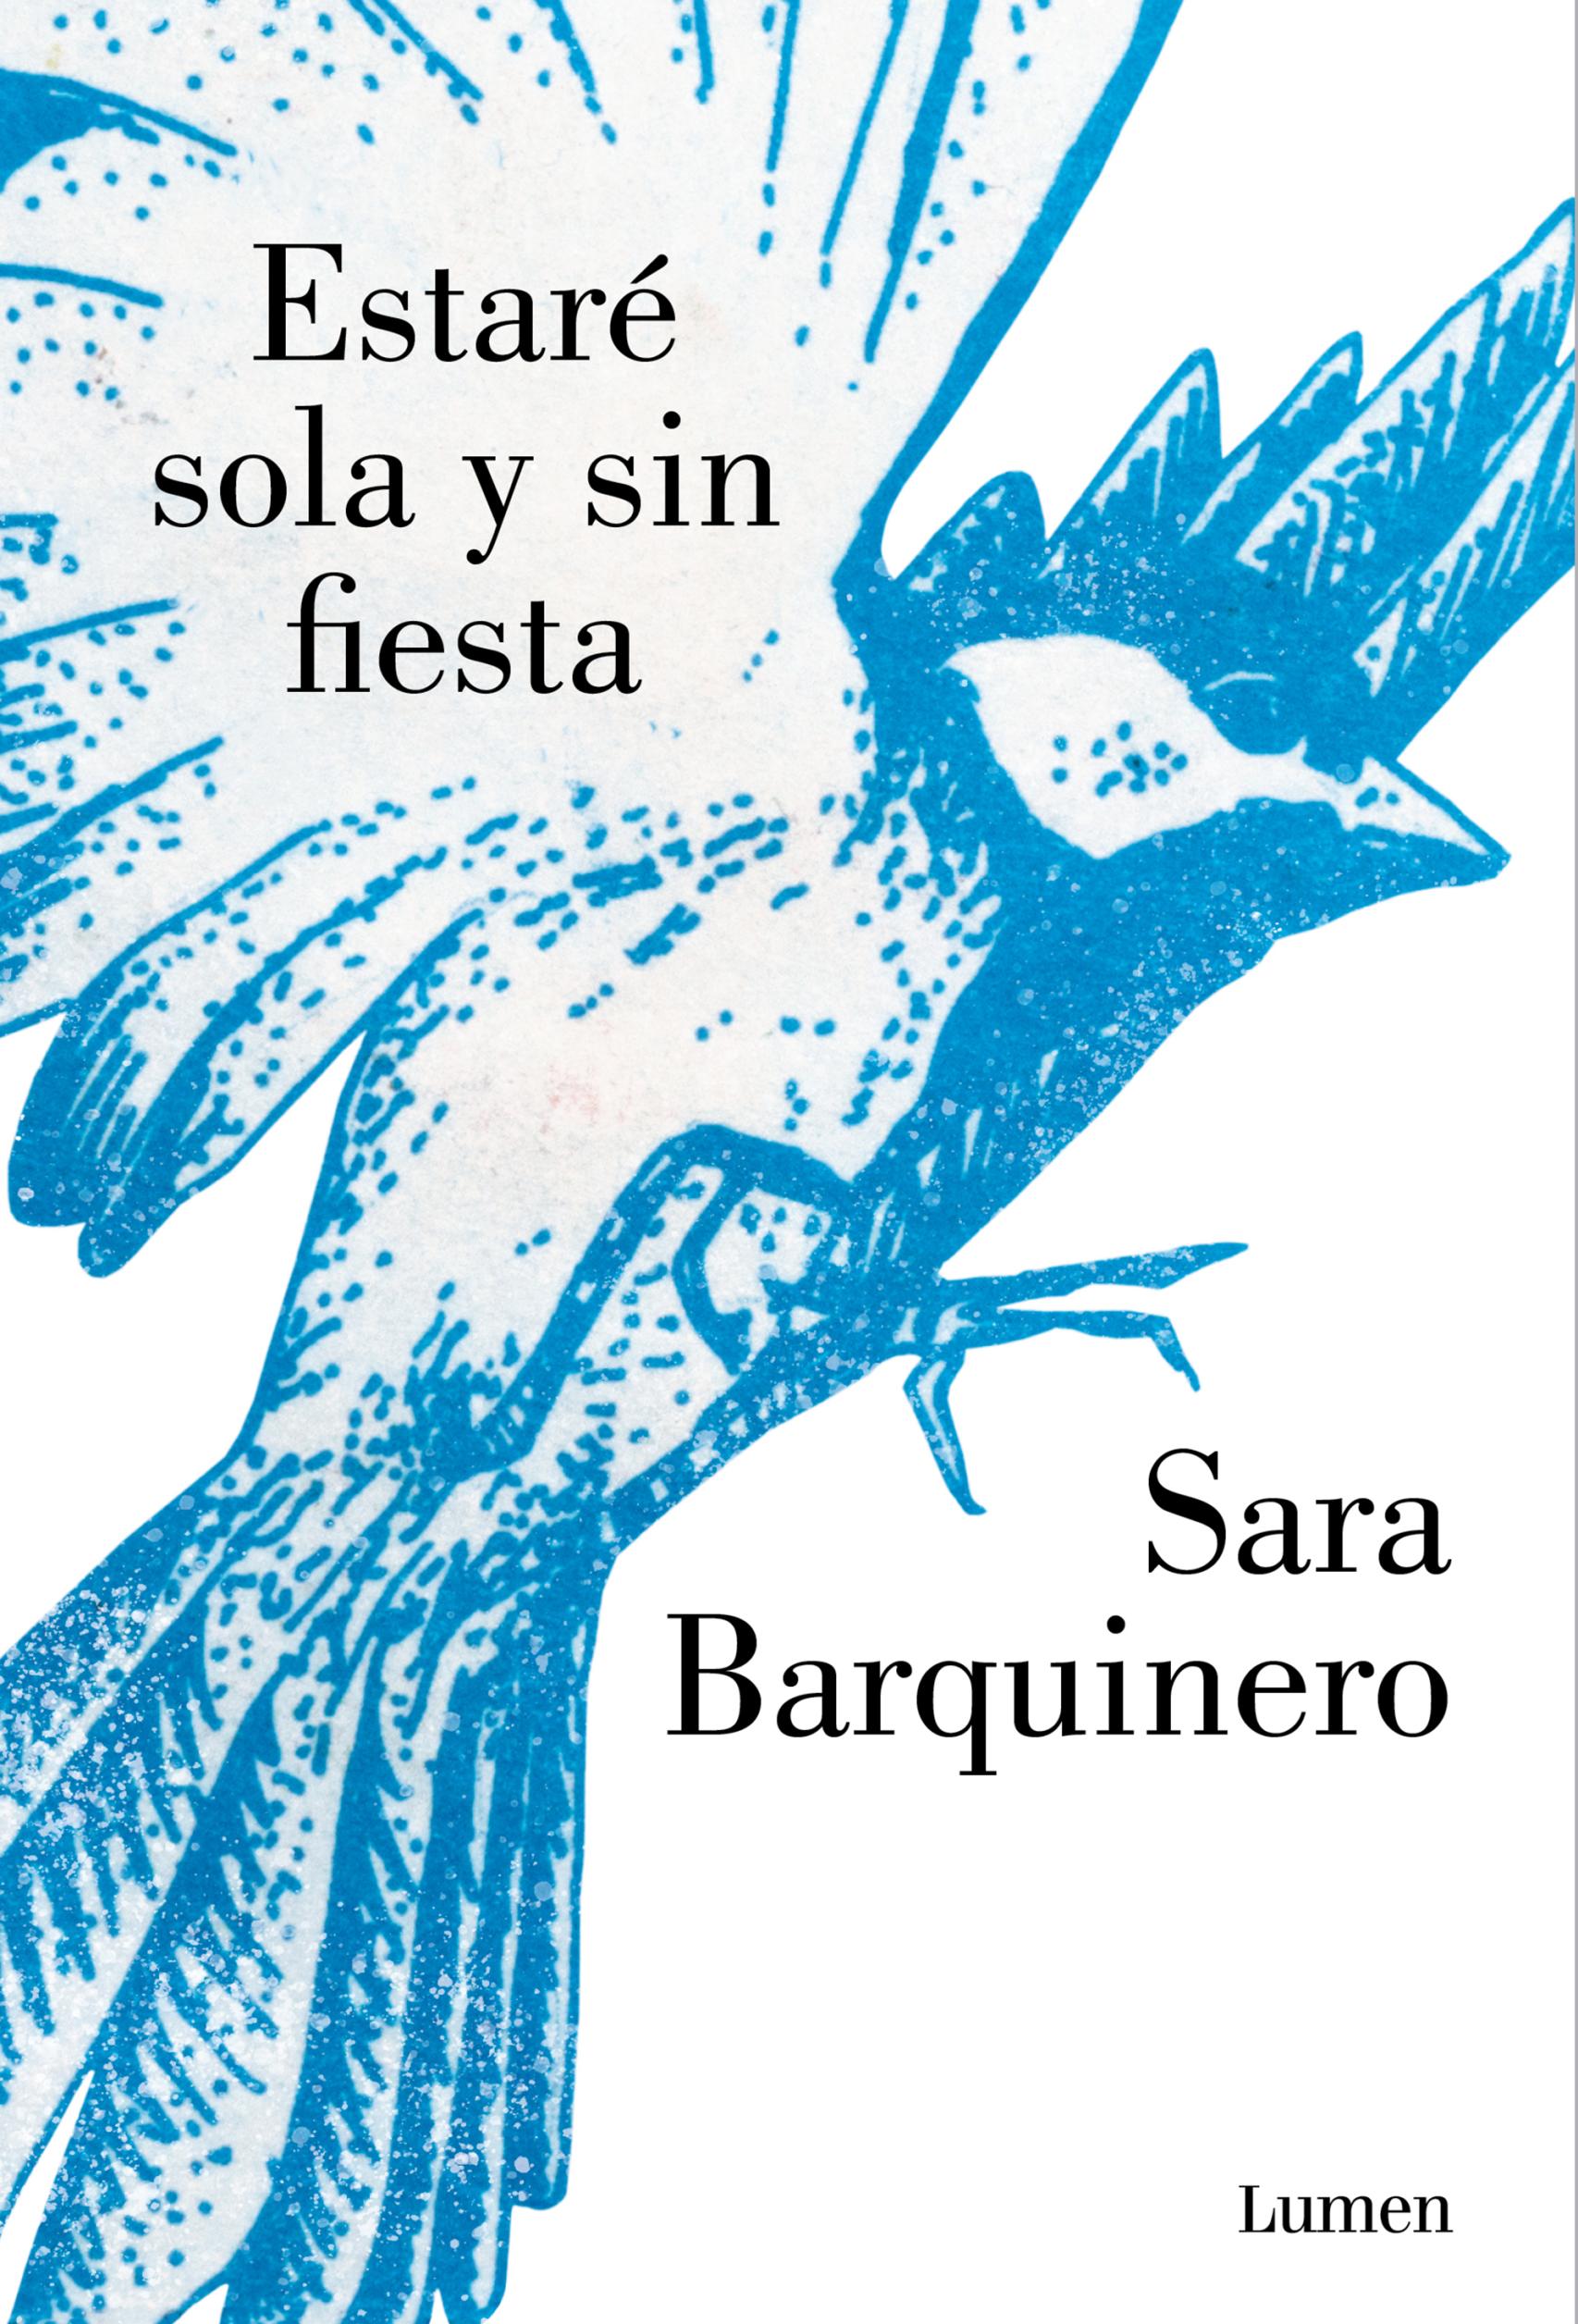 Portada de 'Estaré sola y sin fiesta', la novela de Sara Barquinero.